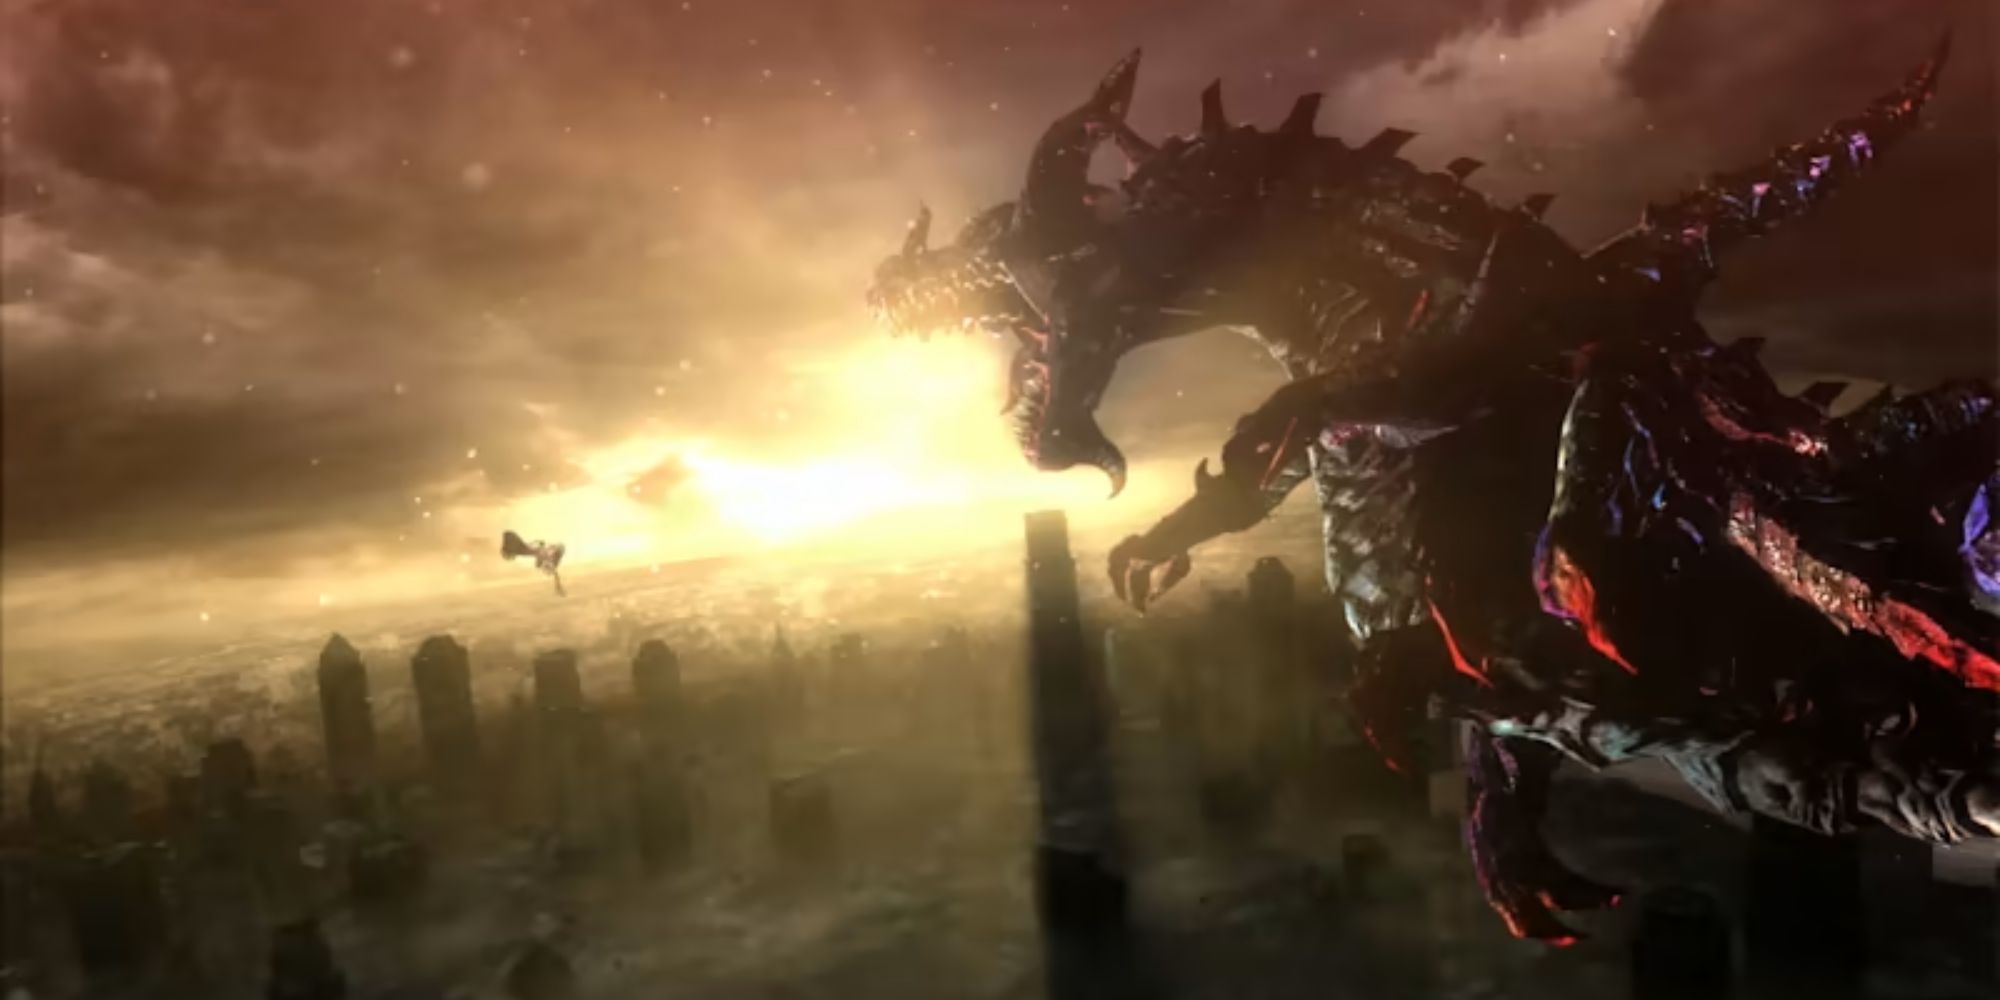 Bayonetta faces a giant dragon in the air